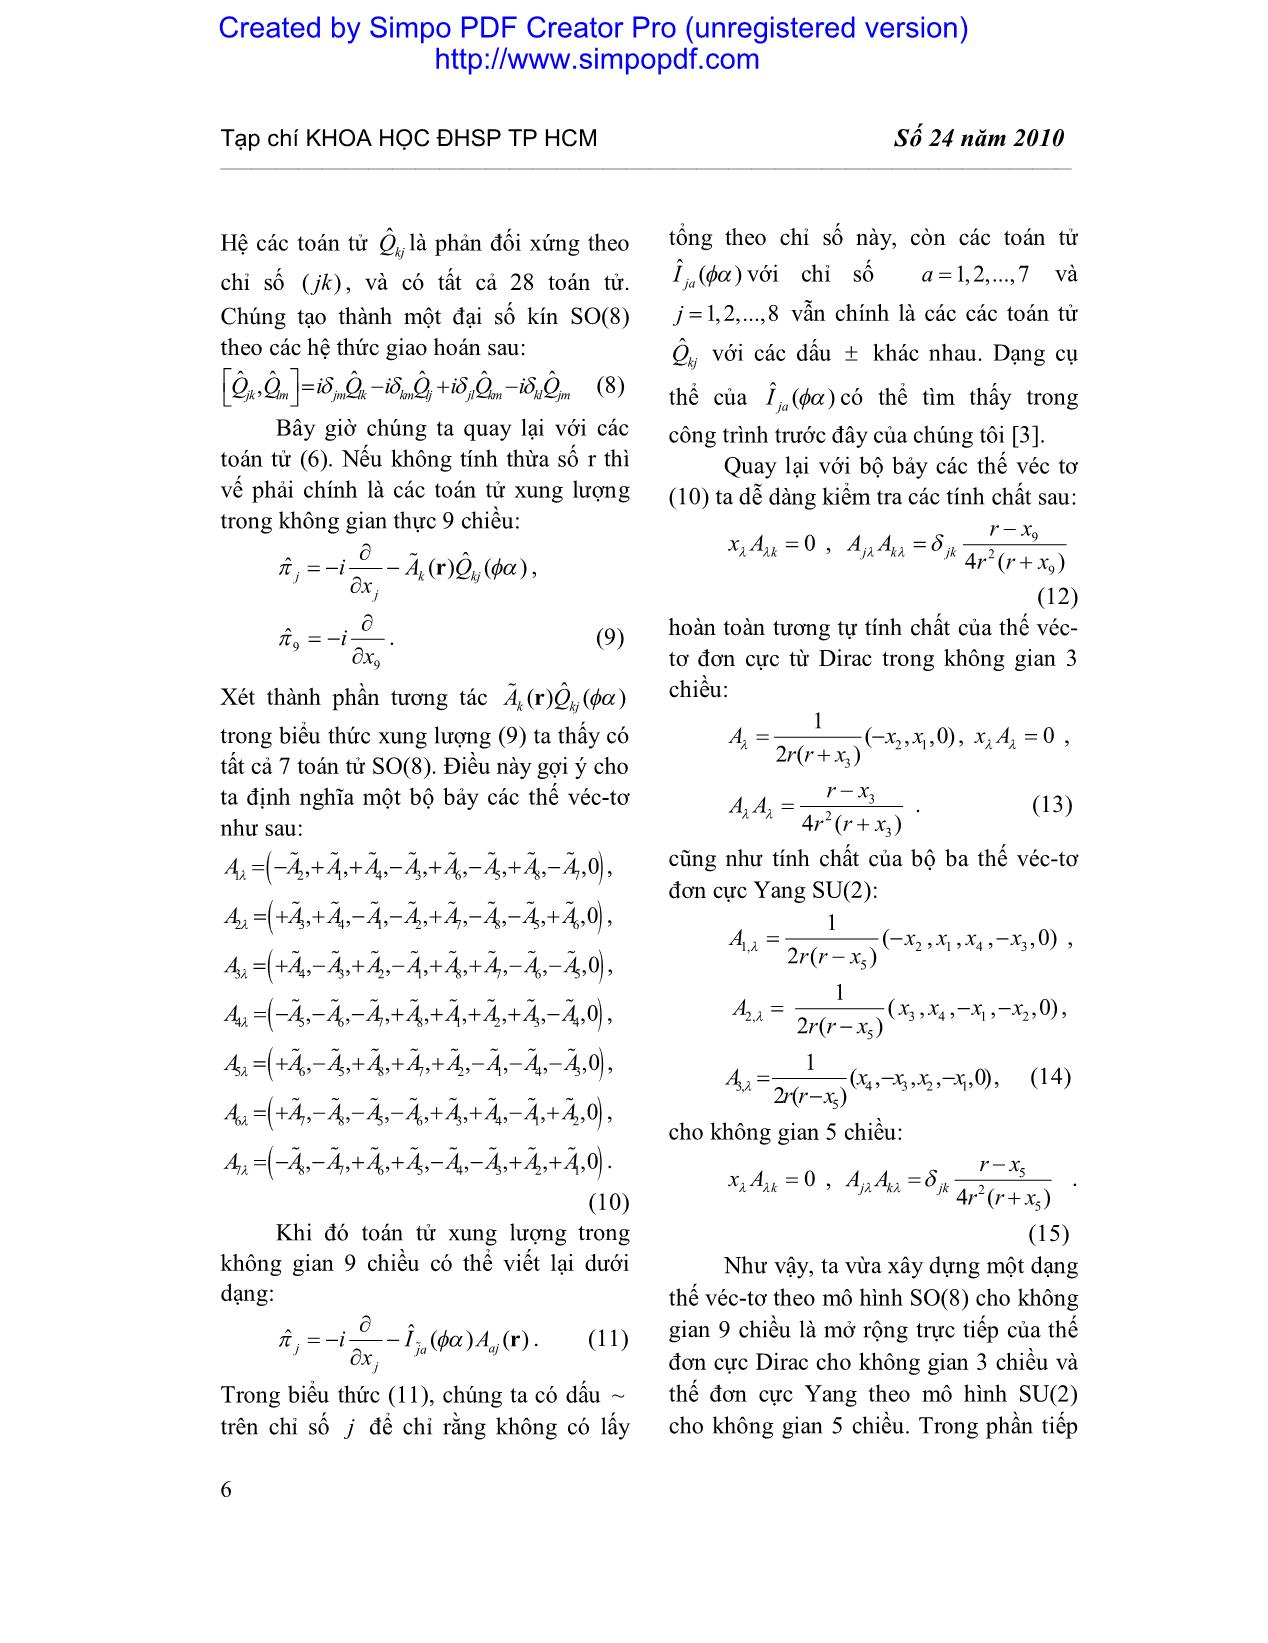 Mở rộng đơn cực Dirac và Yang cho không gian 9 chiều trang 4